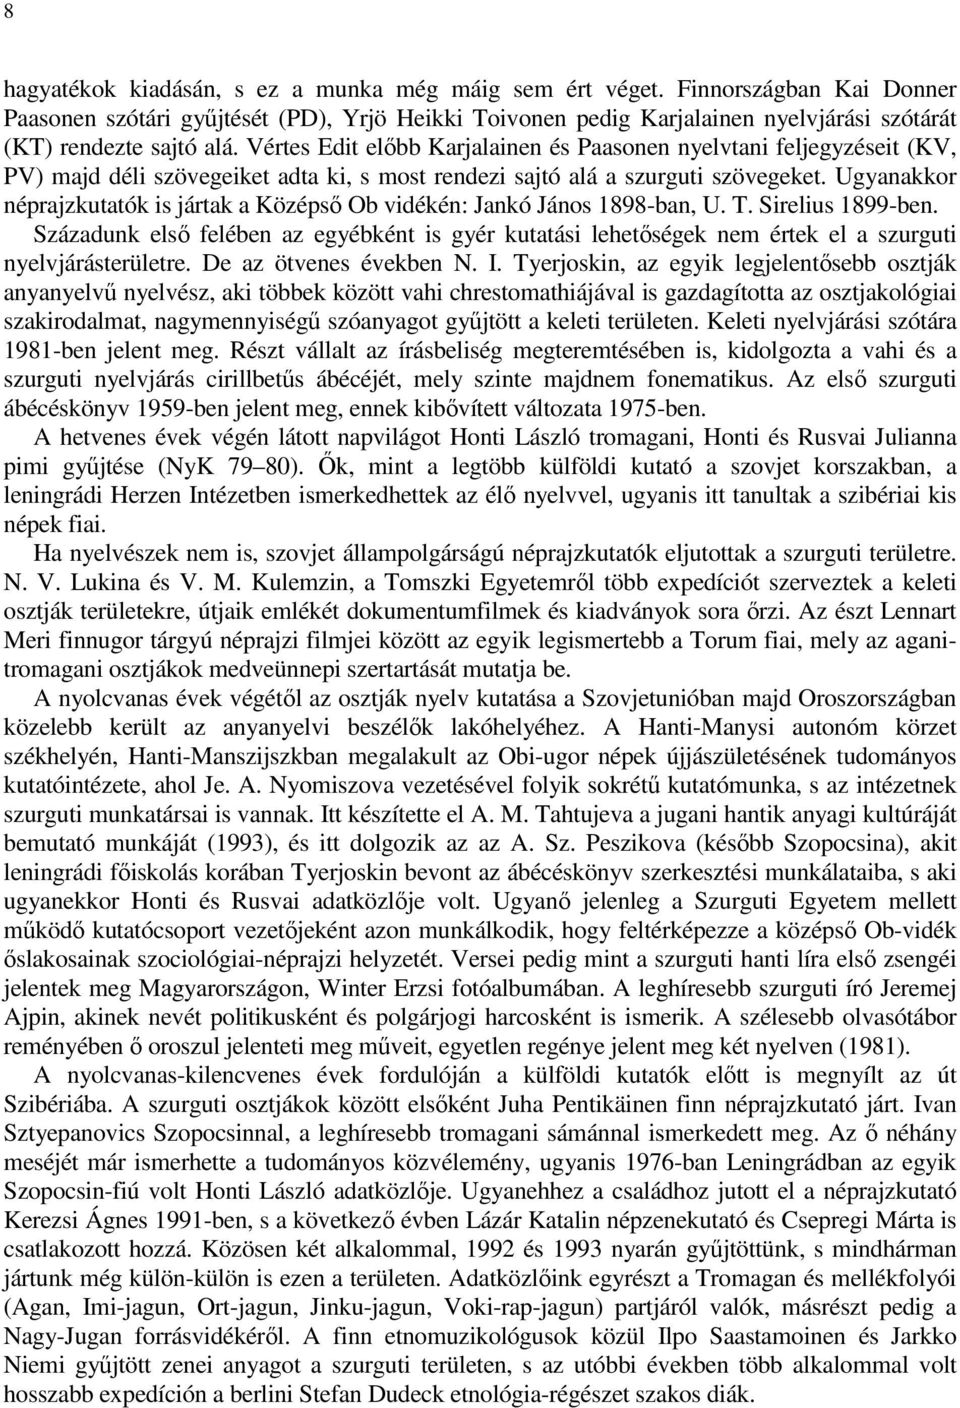 Vértes Edit elıbb Karjalainen és Paasonen nyelvtani feljegyzéseit (KV, PV) majd déli szövegeiket adta ki, s most rendezi sajtó alá a szurguti szövegeket.